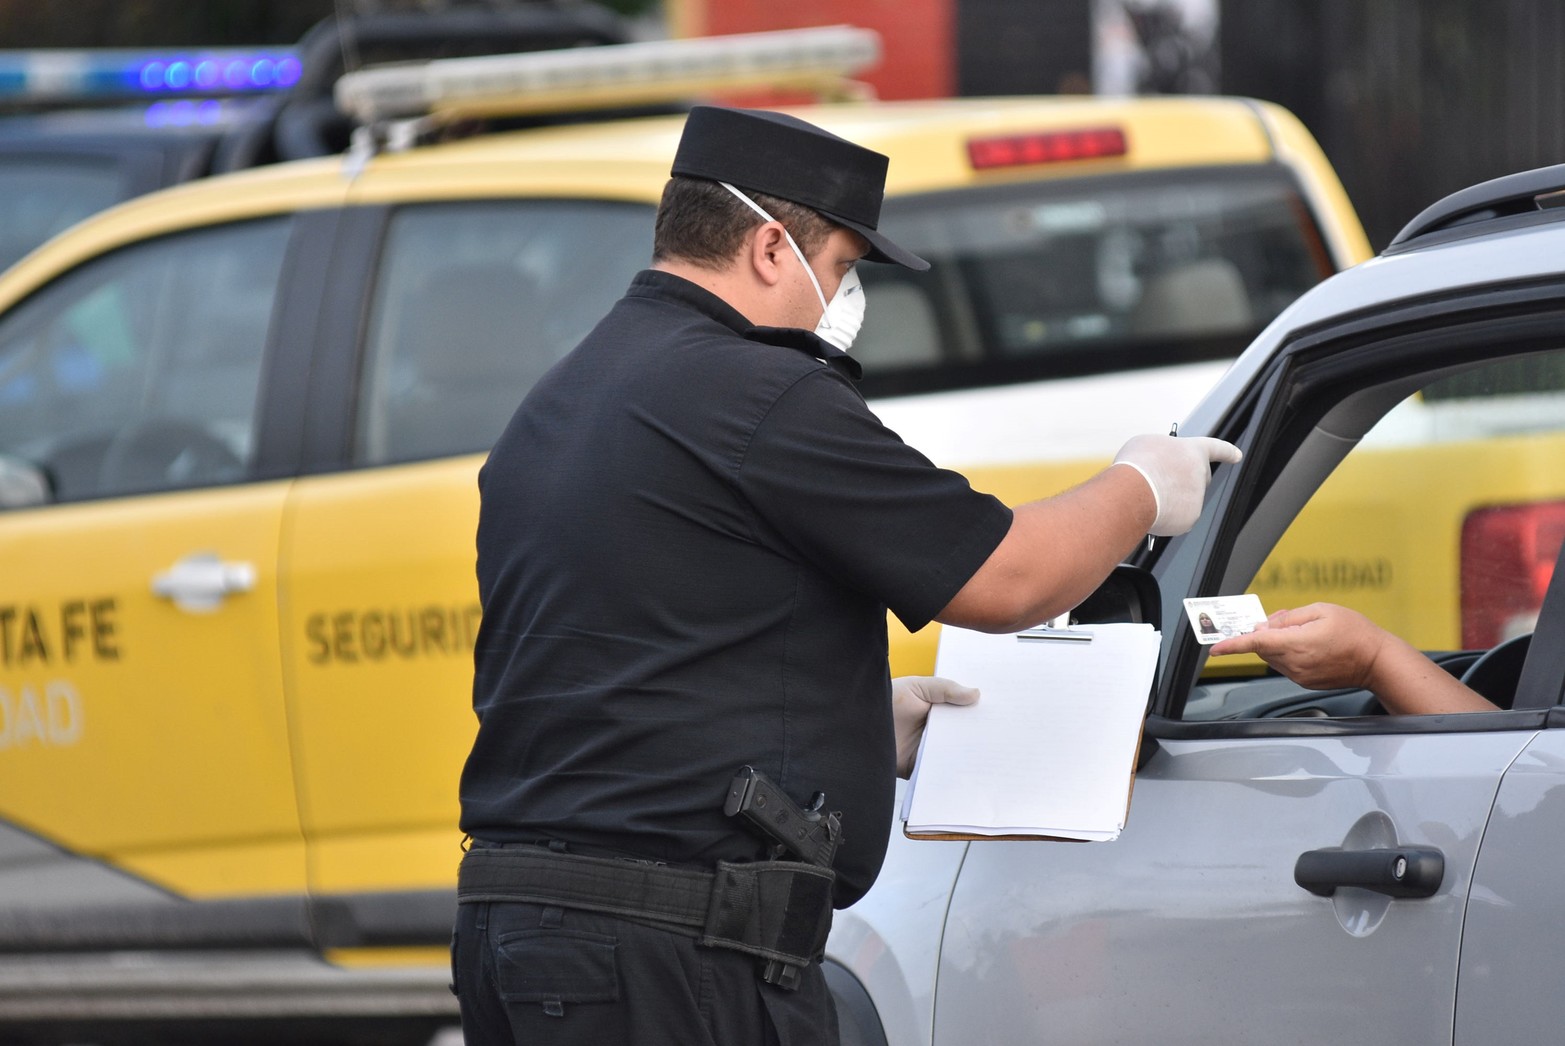 La policía realizaba a diario los controles a los conductores, solicitando la habilitación de libre circulación. Crédito: Guillermo Di Salvatore